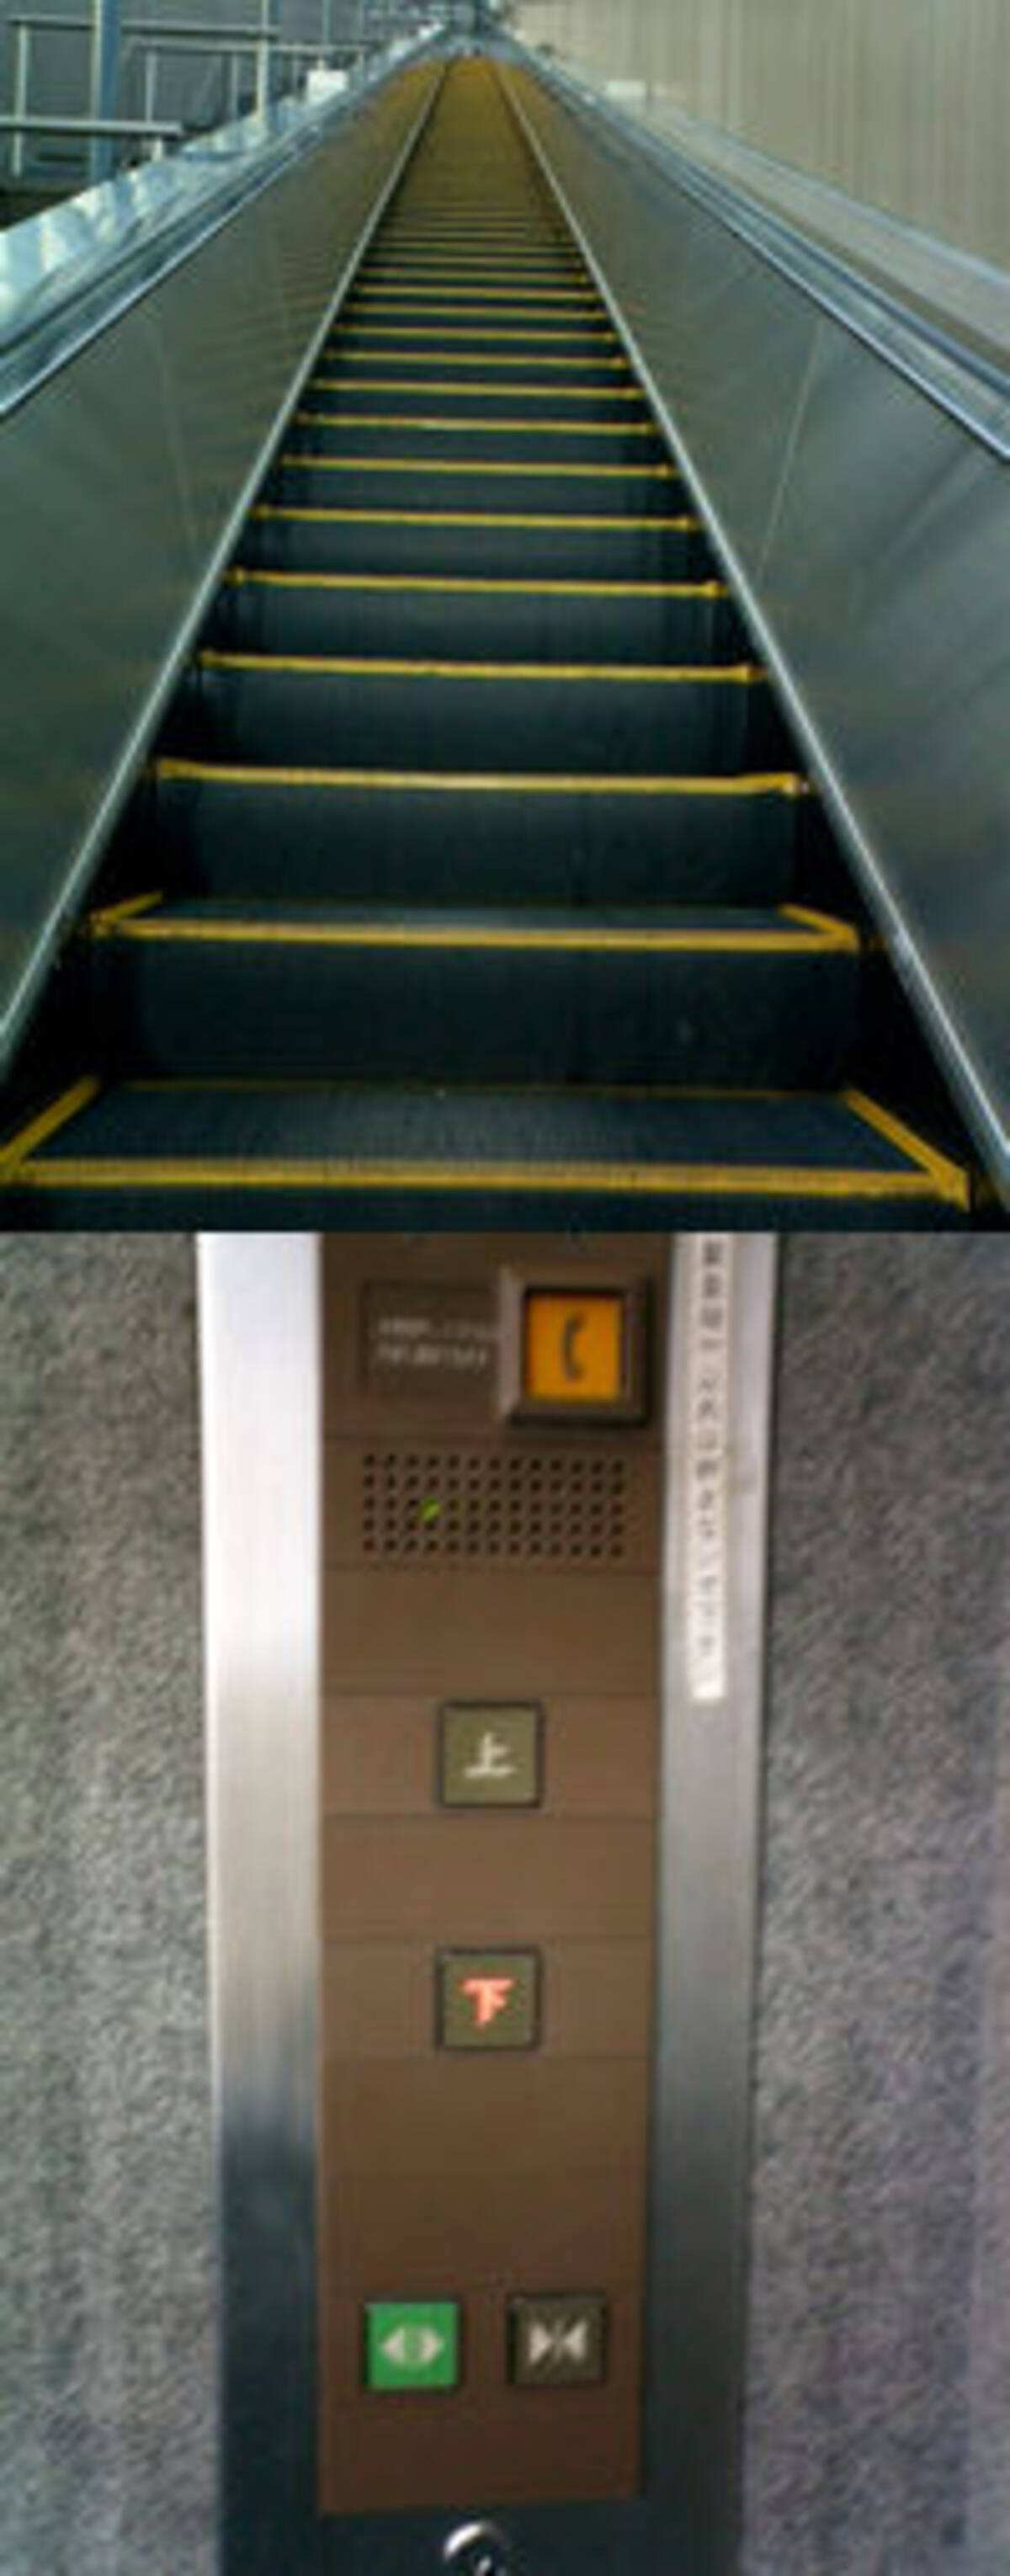 日本一長いエレベーターに乗りに行く 04年4月12日 エキサイトニュース